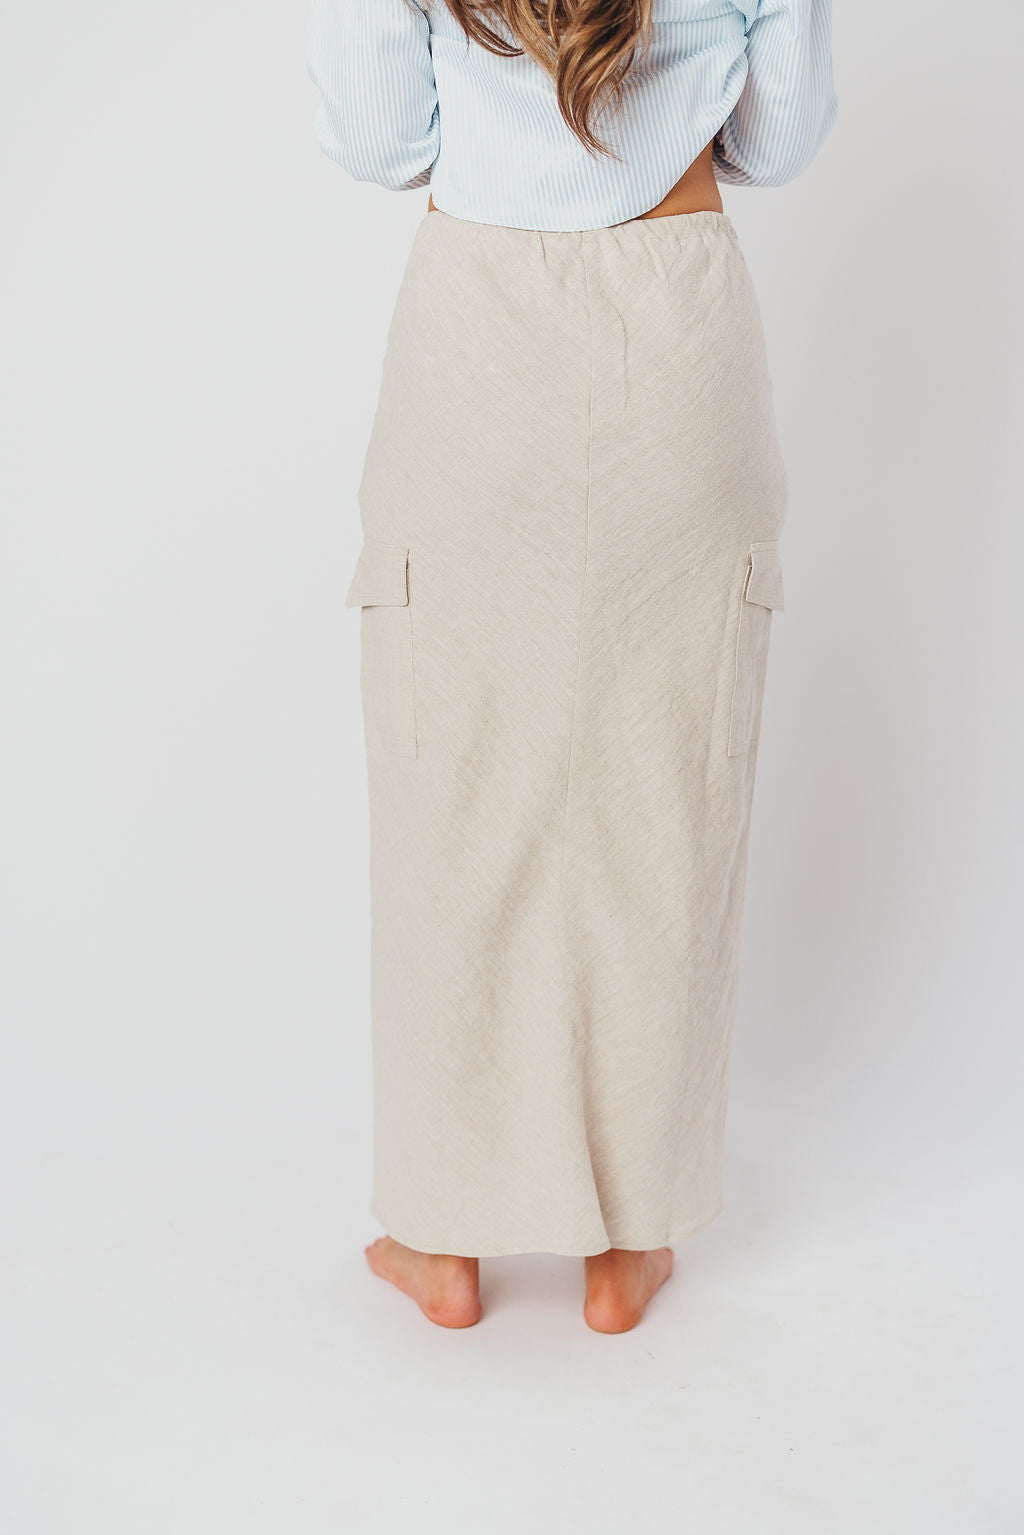 Farrah Linen Maxi Skirt in Melange